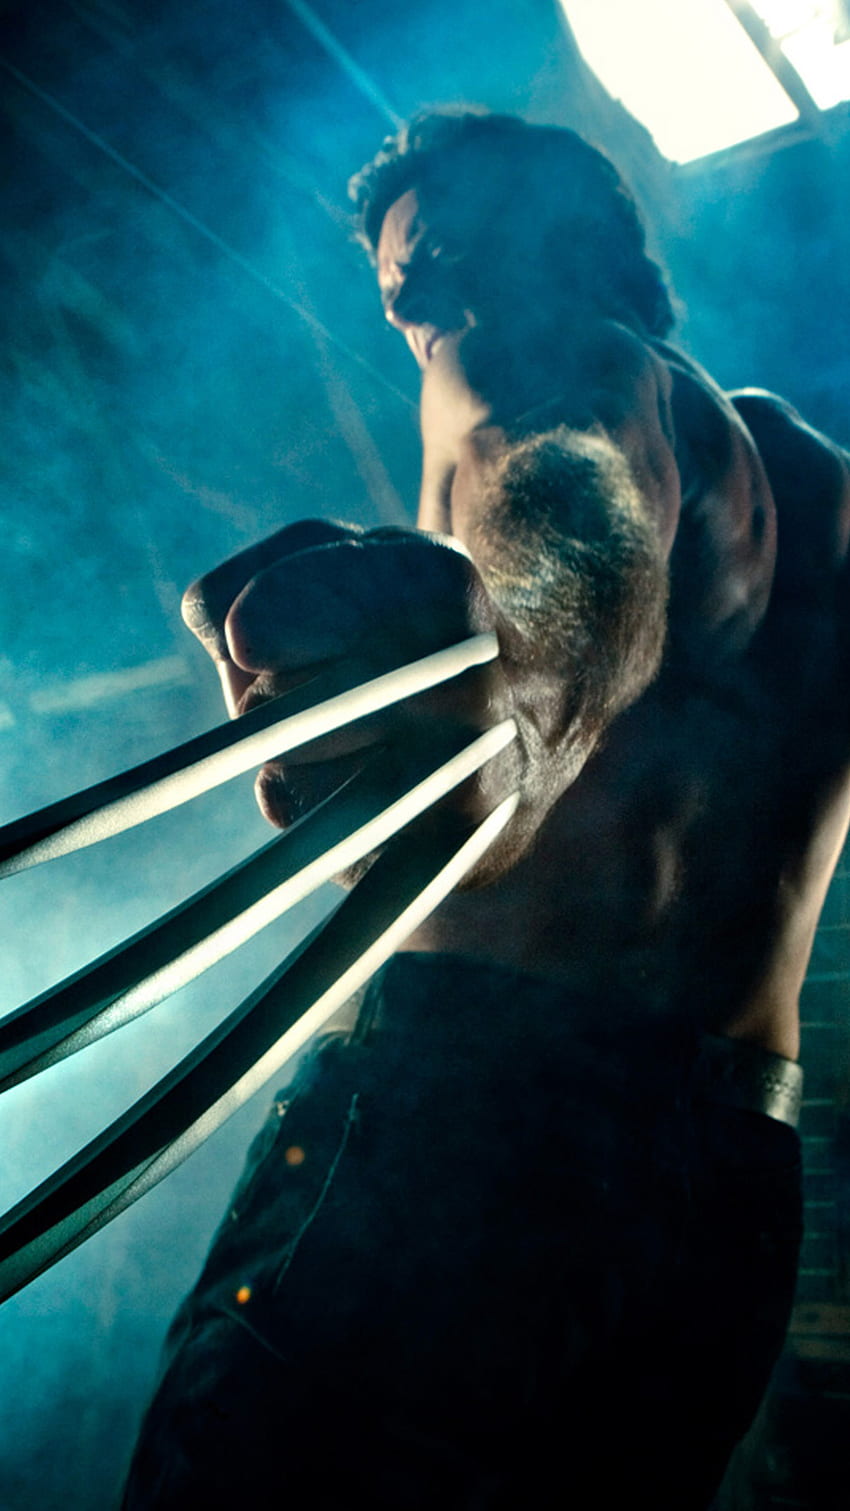 Xmen Wolverine LG G3 HD-Handy-Hintergrundbild